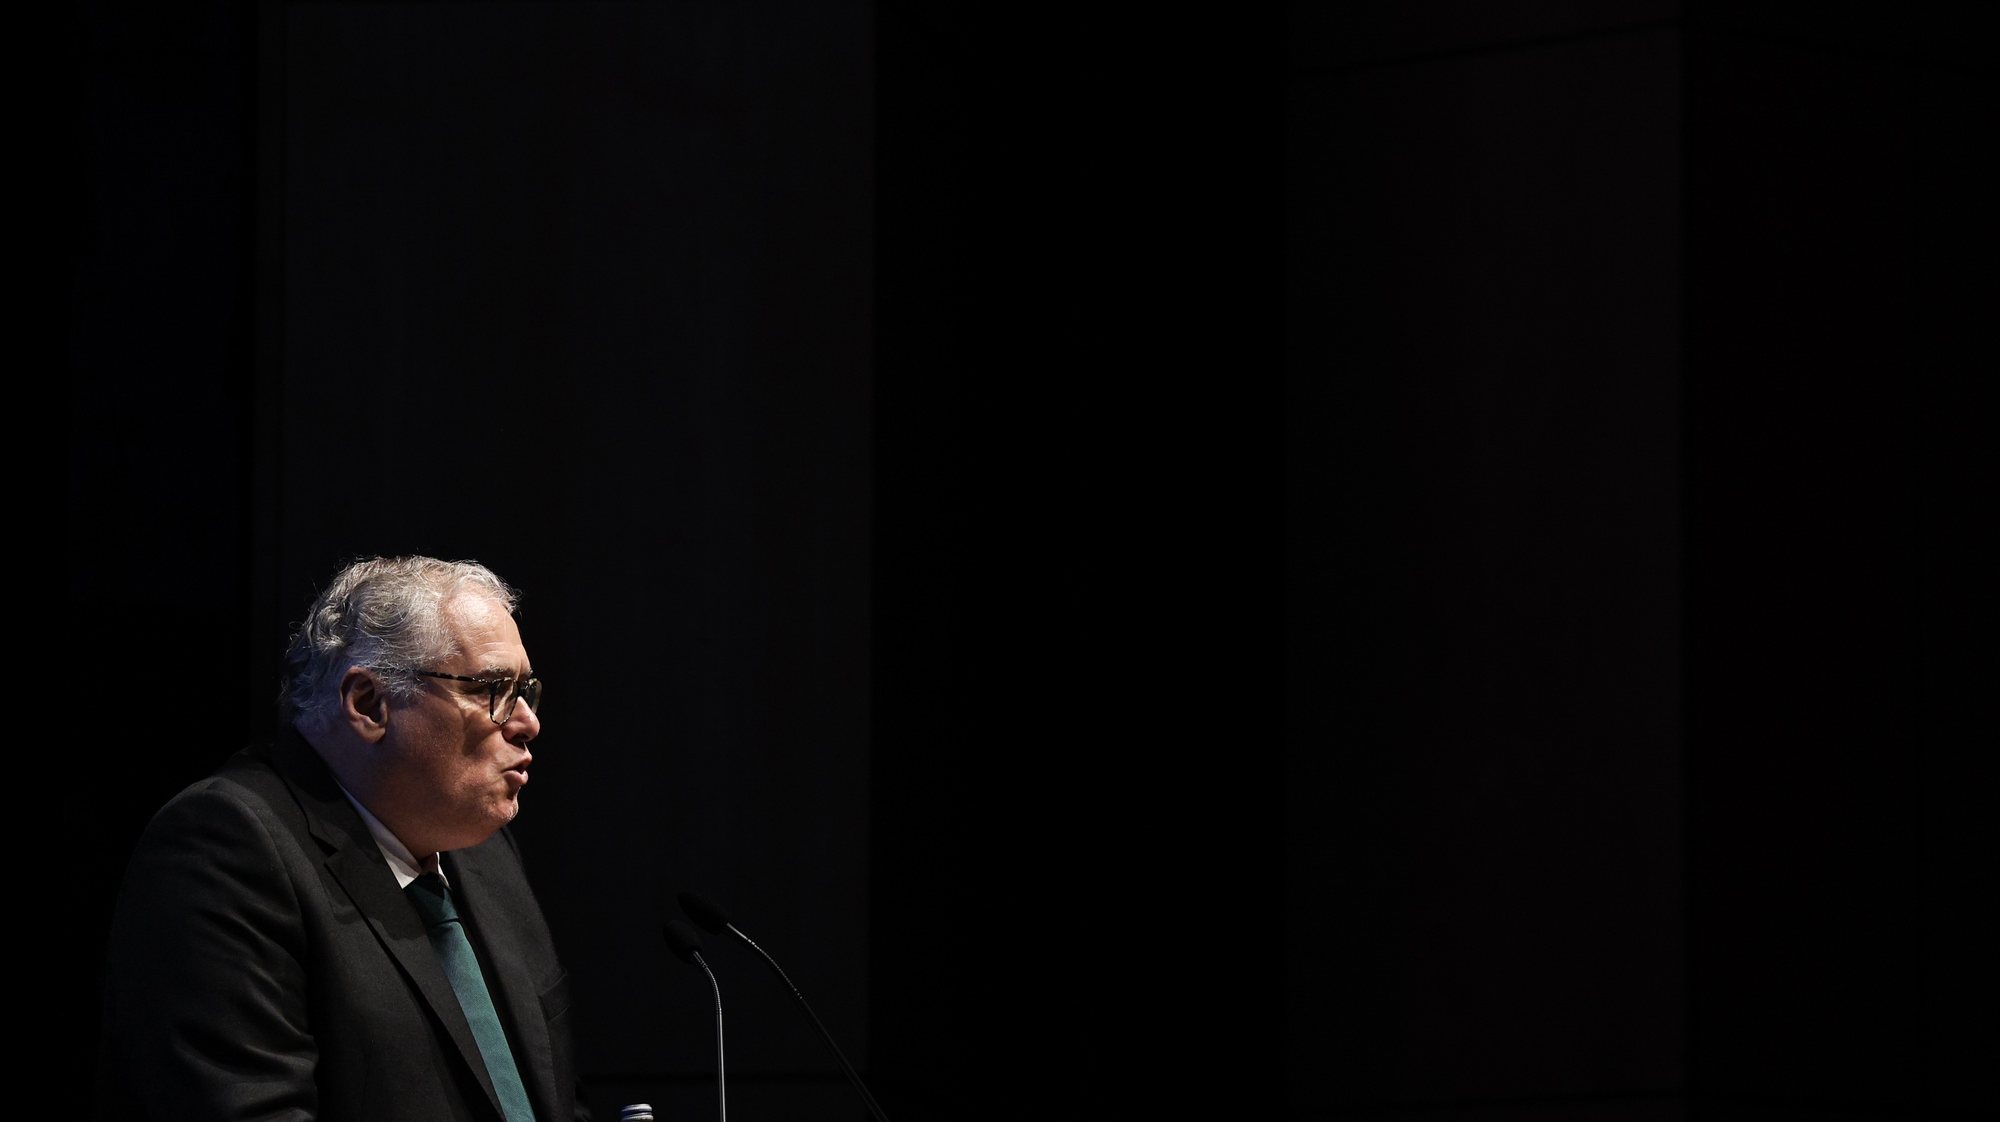 O galardoado com o Prémio Pessoa 2022, João Luís Barreto Guimarães, usa da palavra durante a cerimónia do galardão na Culturgest em Lisboa, 17 de abril de 2023. TIAGO PETINGA/LUSA